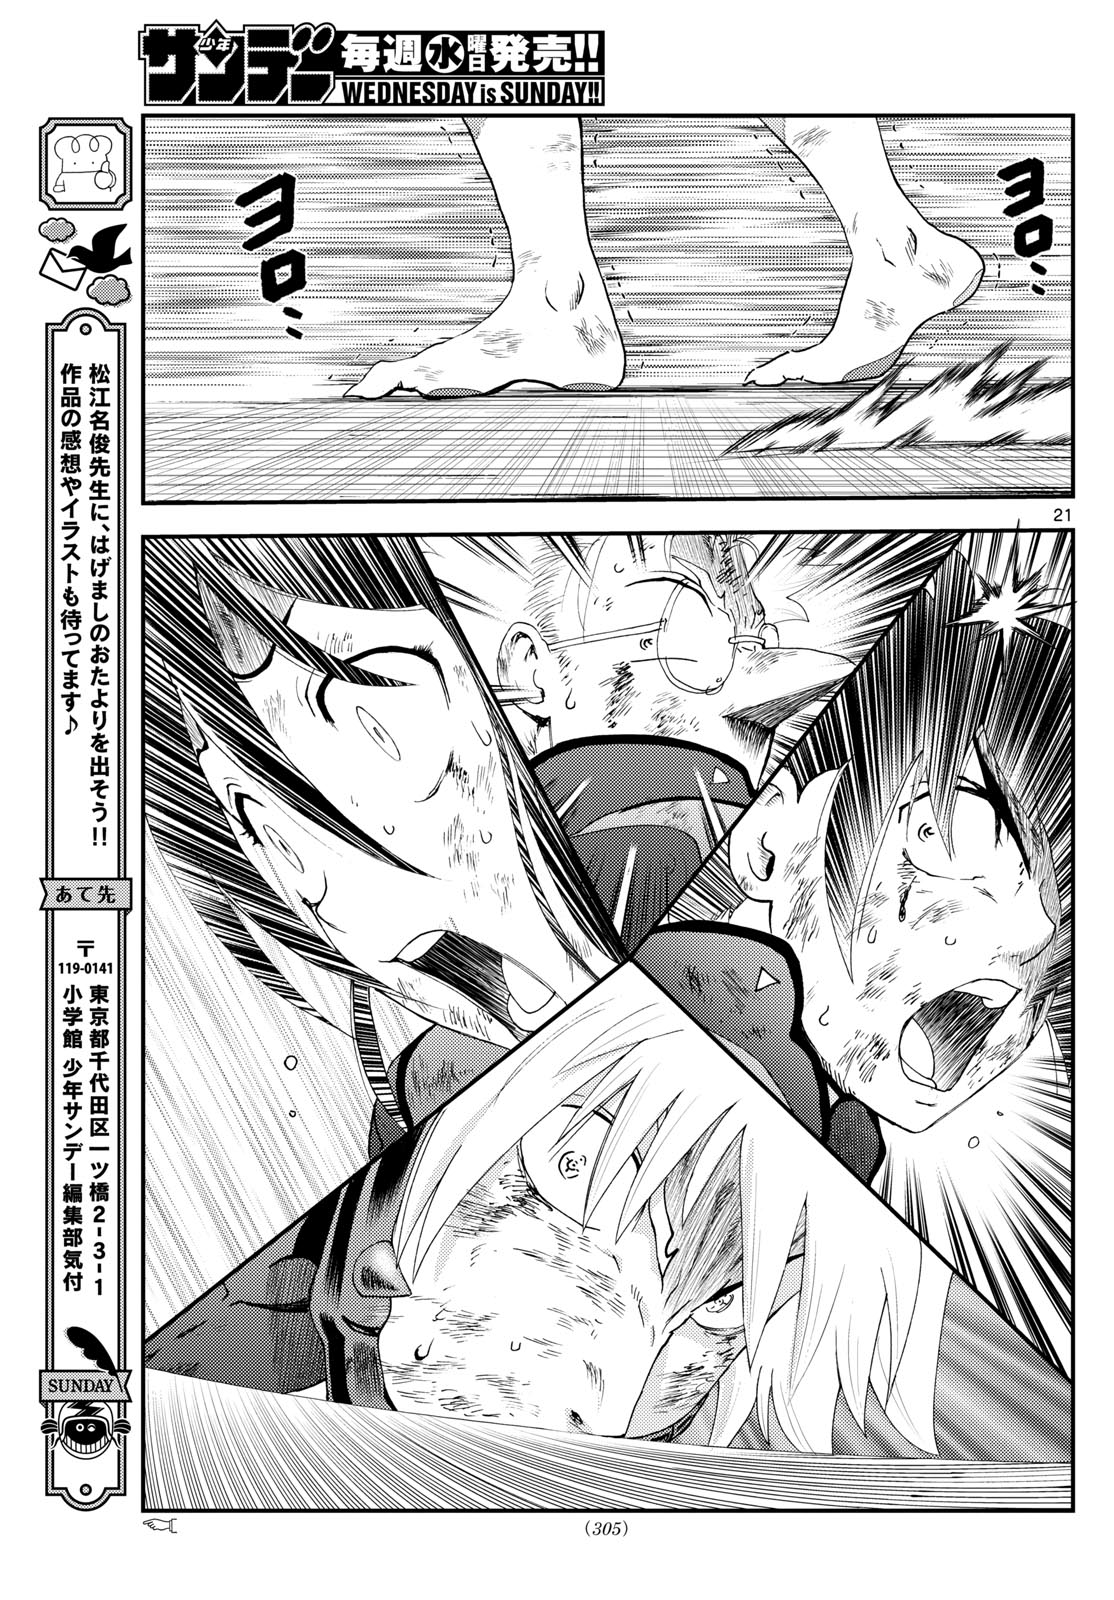 Kimi wa 008 - Chapter 280 - Page 21